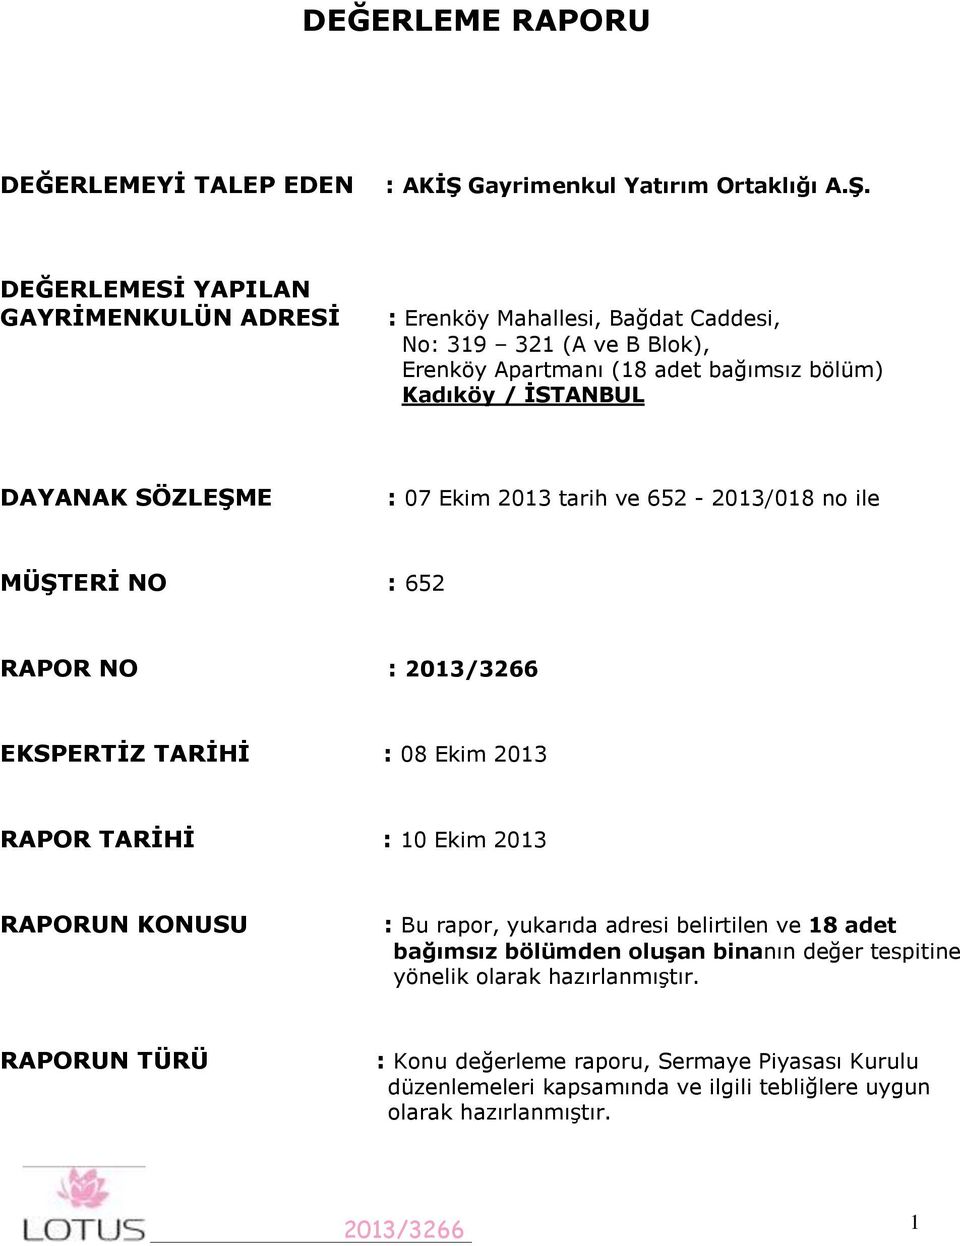 DEĞERLEMESİ YAPILAN GAYRİMENKULÜN ADRESİ : Erenköy Mahallesi, Bağdat Caddesi, No: 319 321 (A ve B Blok), Erenköy Apartmanı (18 adet bağımsız bölüm) Kadıköy / İSTANBUL